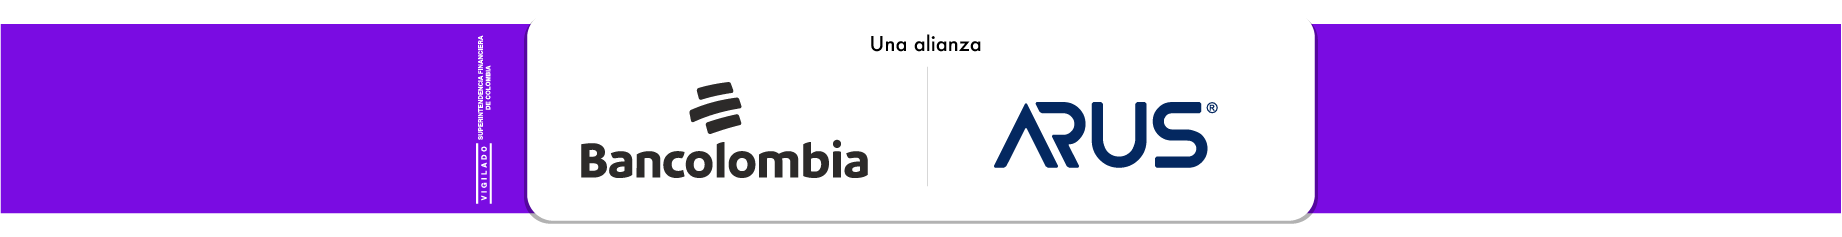 Renting, una alianza ARUS y Bancolombia